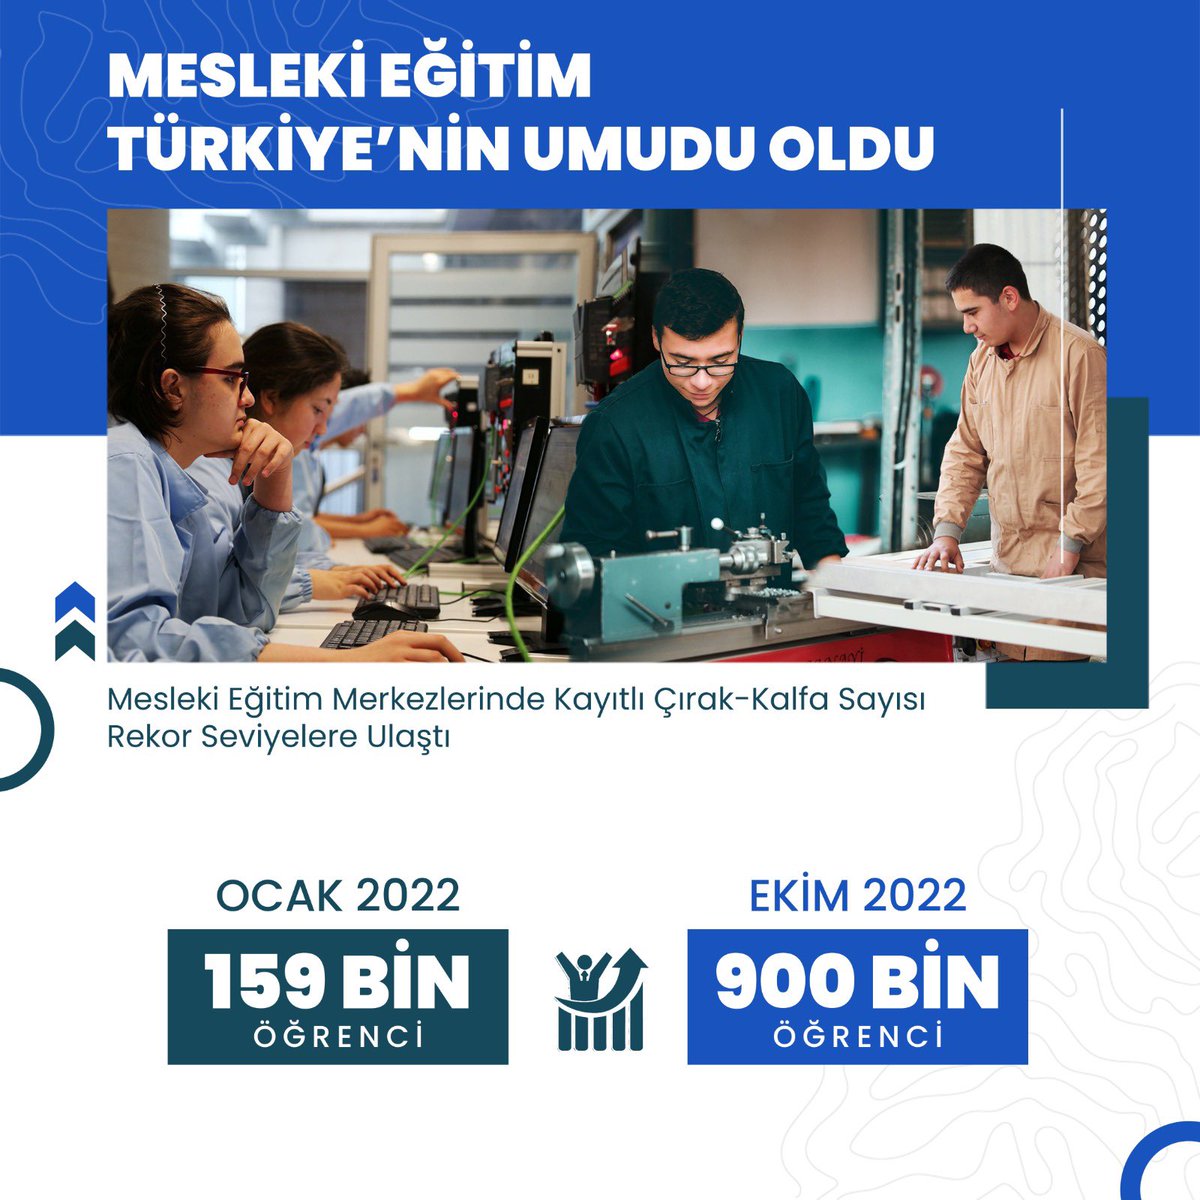 Türkiye’nin Umudu, Güçlü Mesleki Eğitim 📶Ülkemizin üretimde aktif rol alması, kalkınması, nitelikli iş gücü kaynağı için mesleki eğitimi güçlendiririyoruz. 👩‍🎓👨‍🏭Mesleki eğitim merkezlerindeki öğrenci sayısı, on ayda 159 binden 900 bine ulaştı. #MesleğimGeleceğim